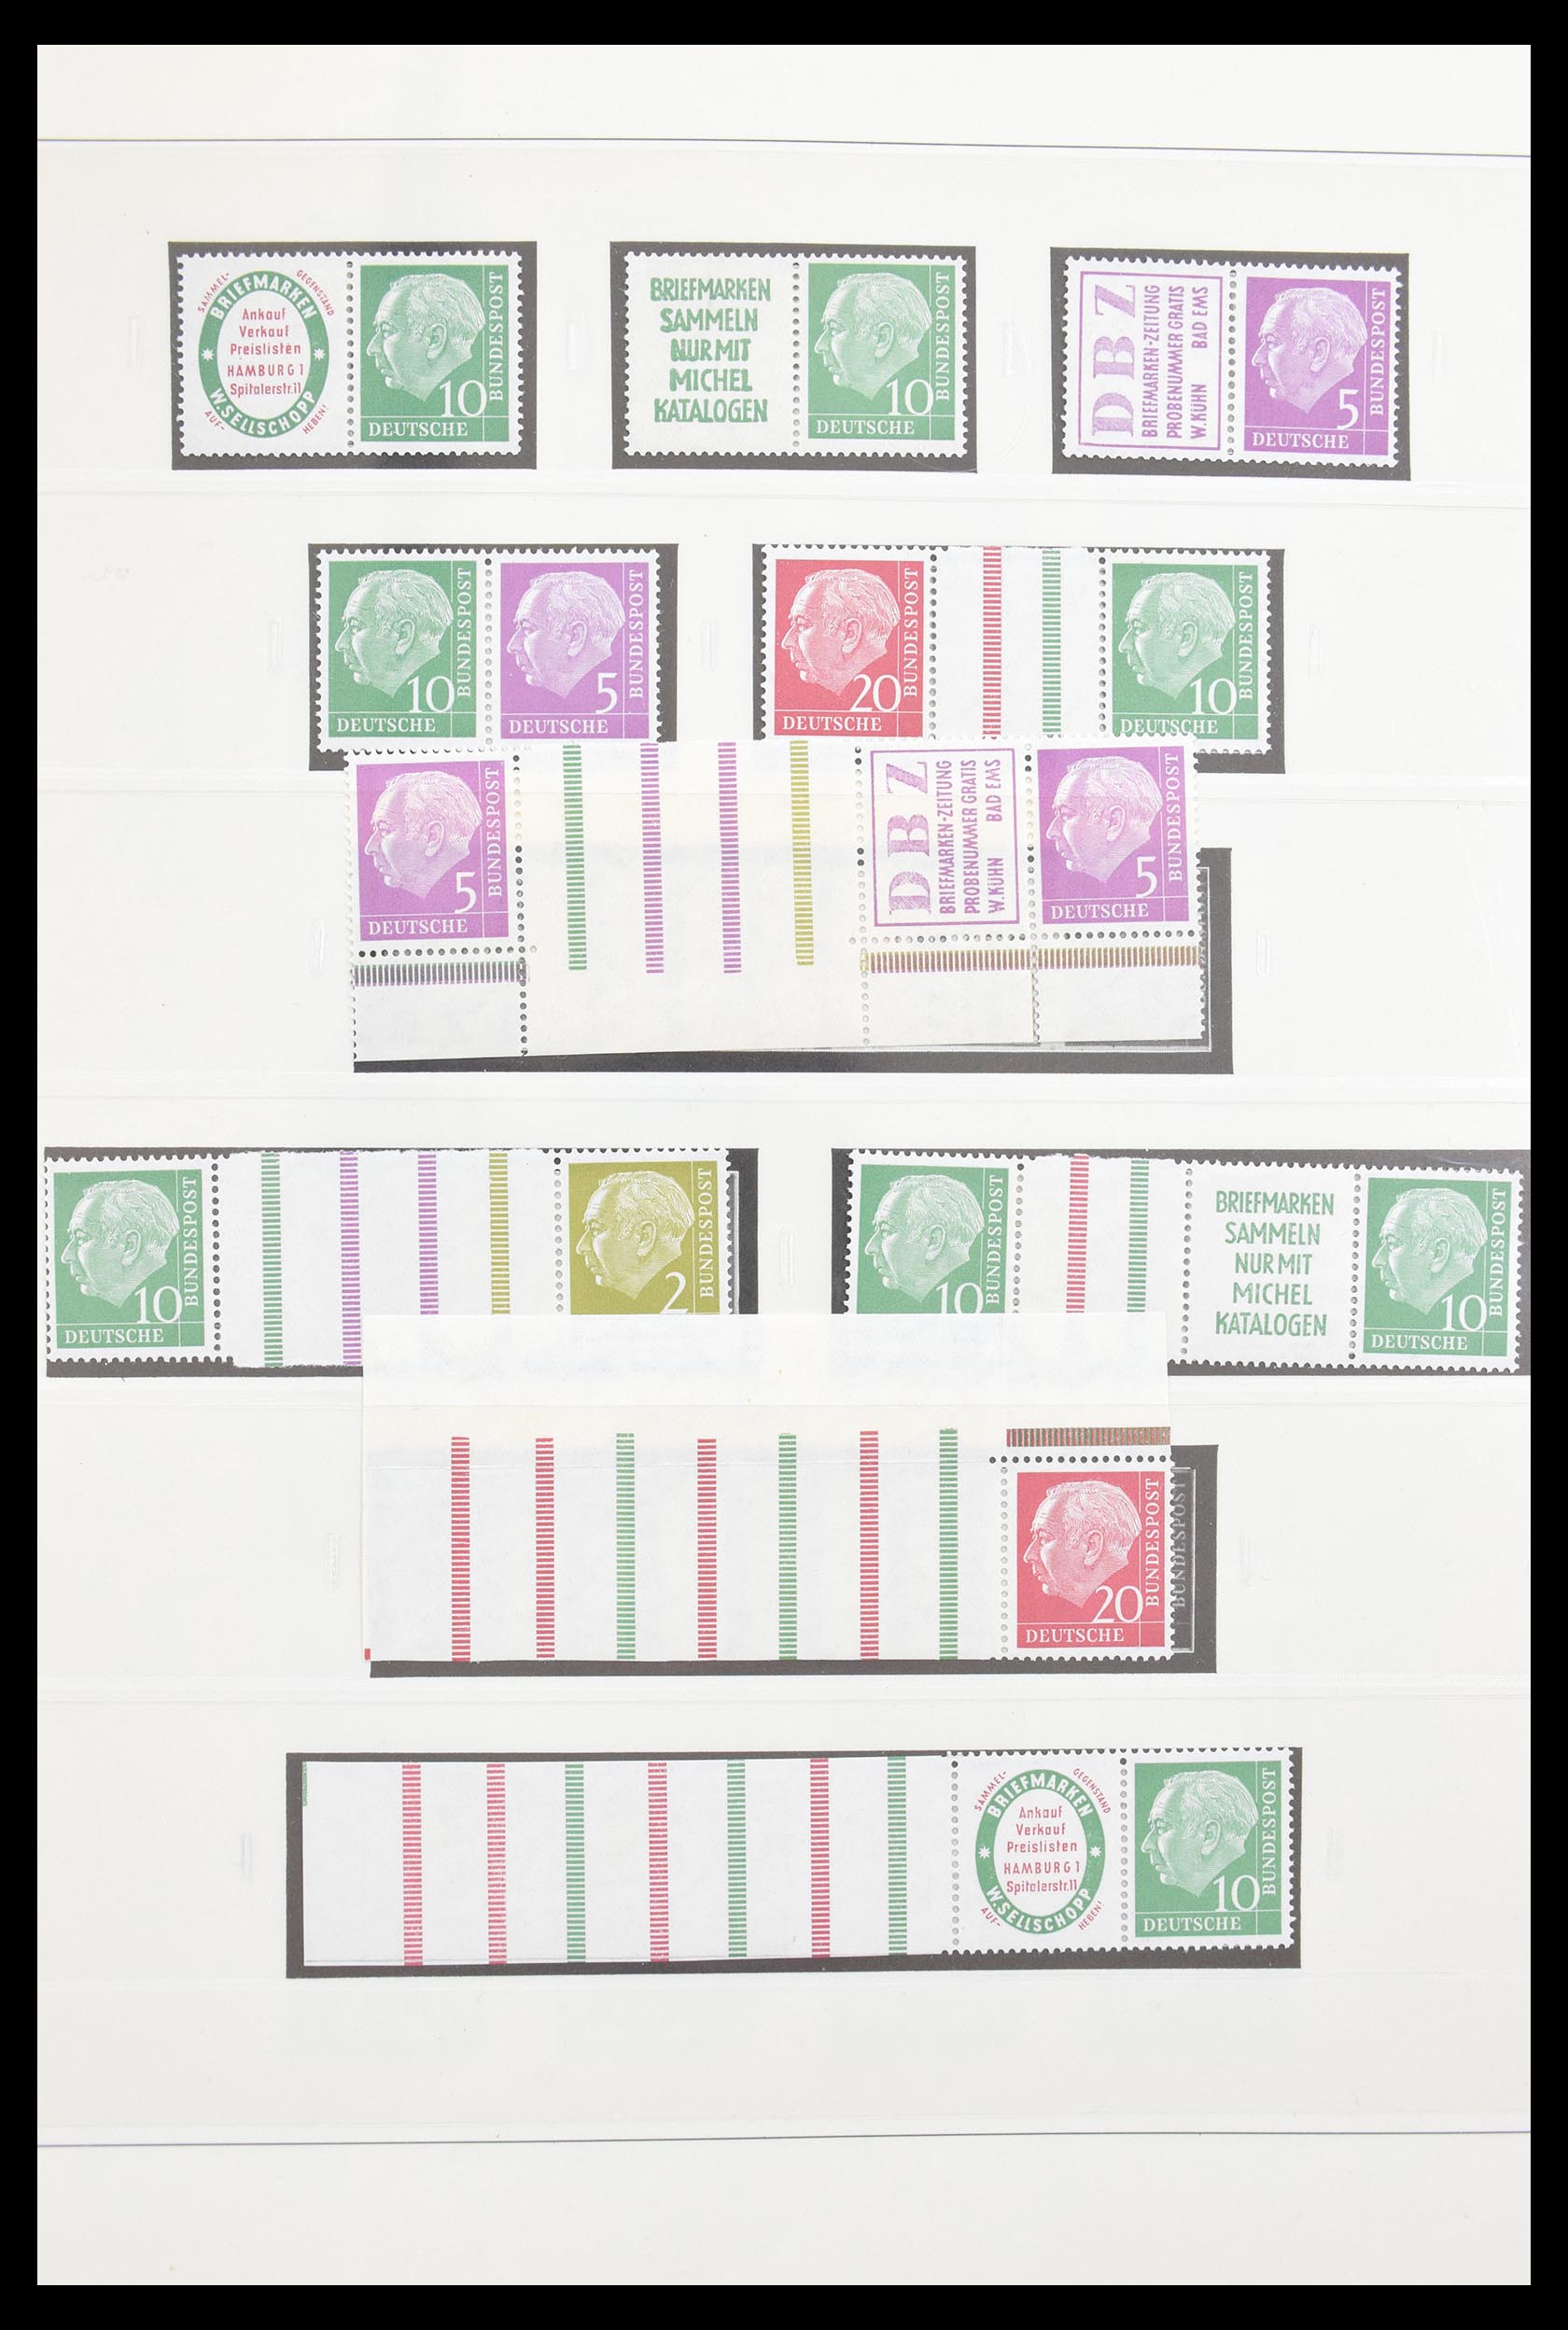 30605 003 - 30605 Bundespost combinations 1951-1974.